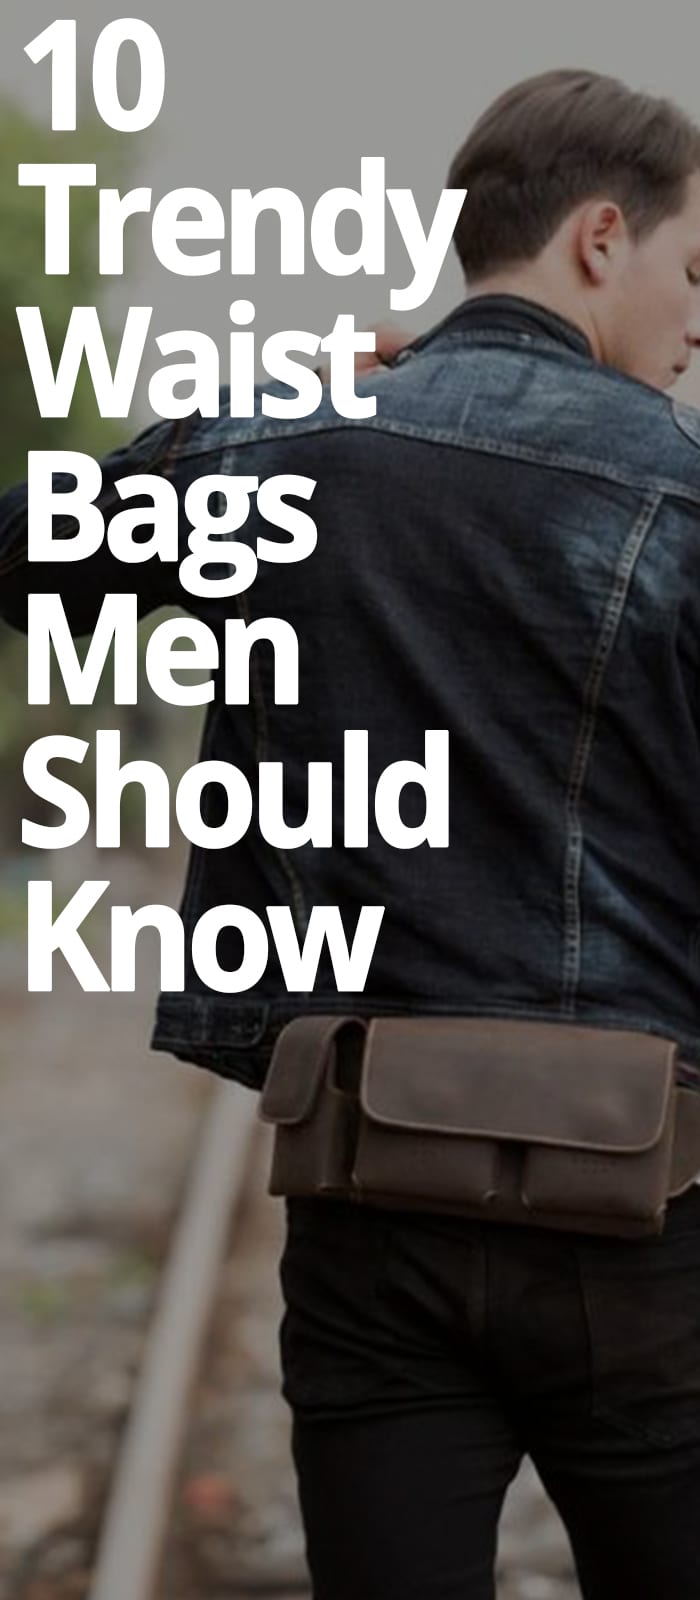 10 WAIST BAGS MEN SHOULD KNOW